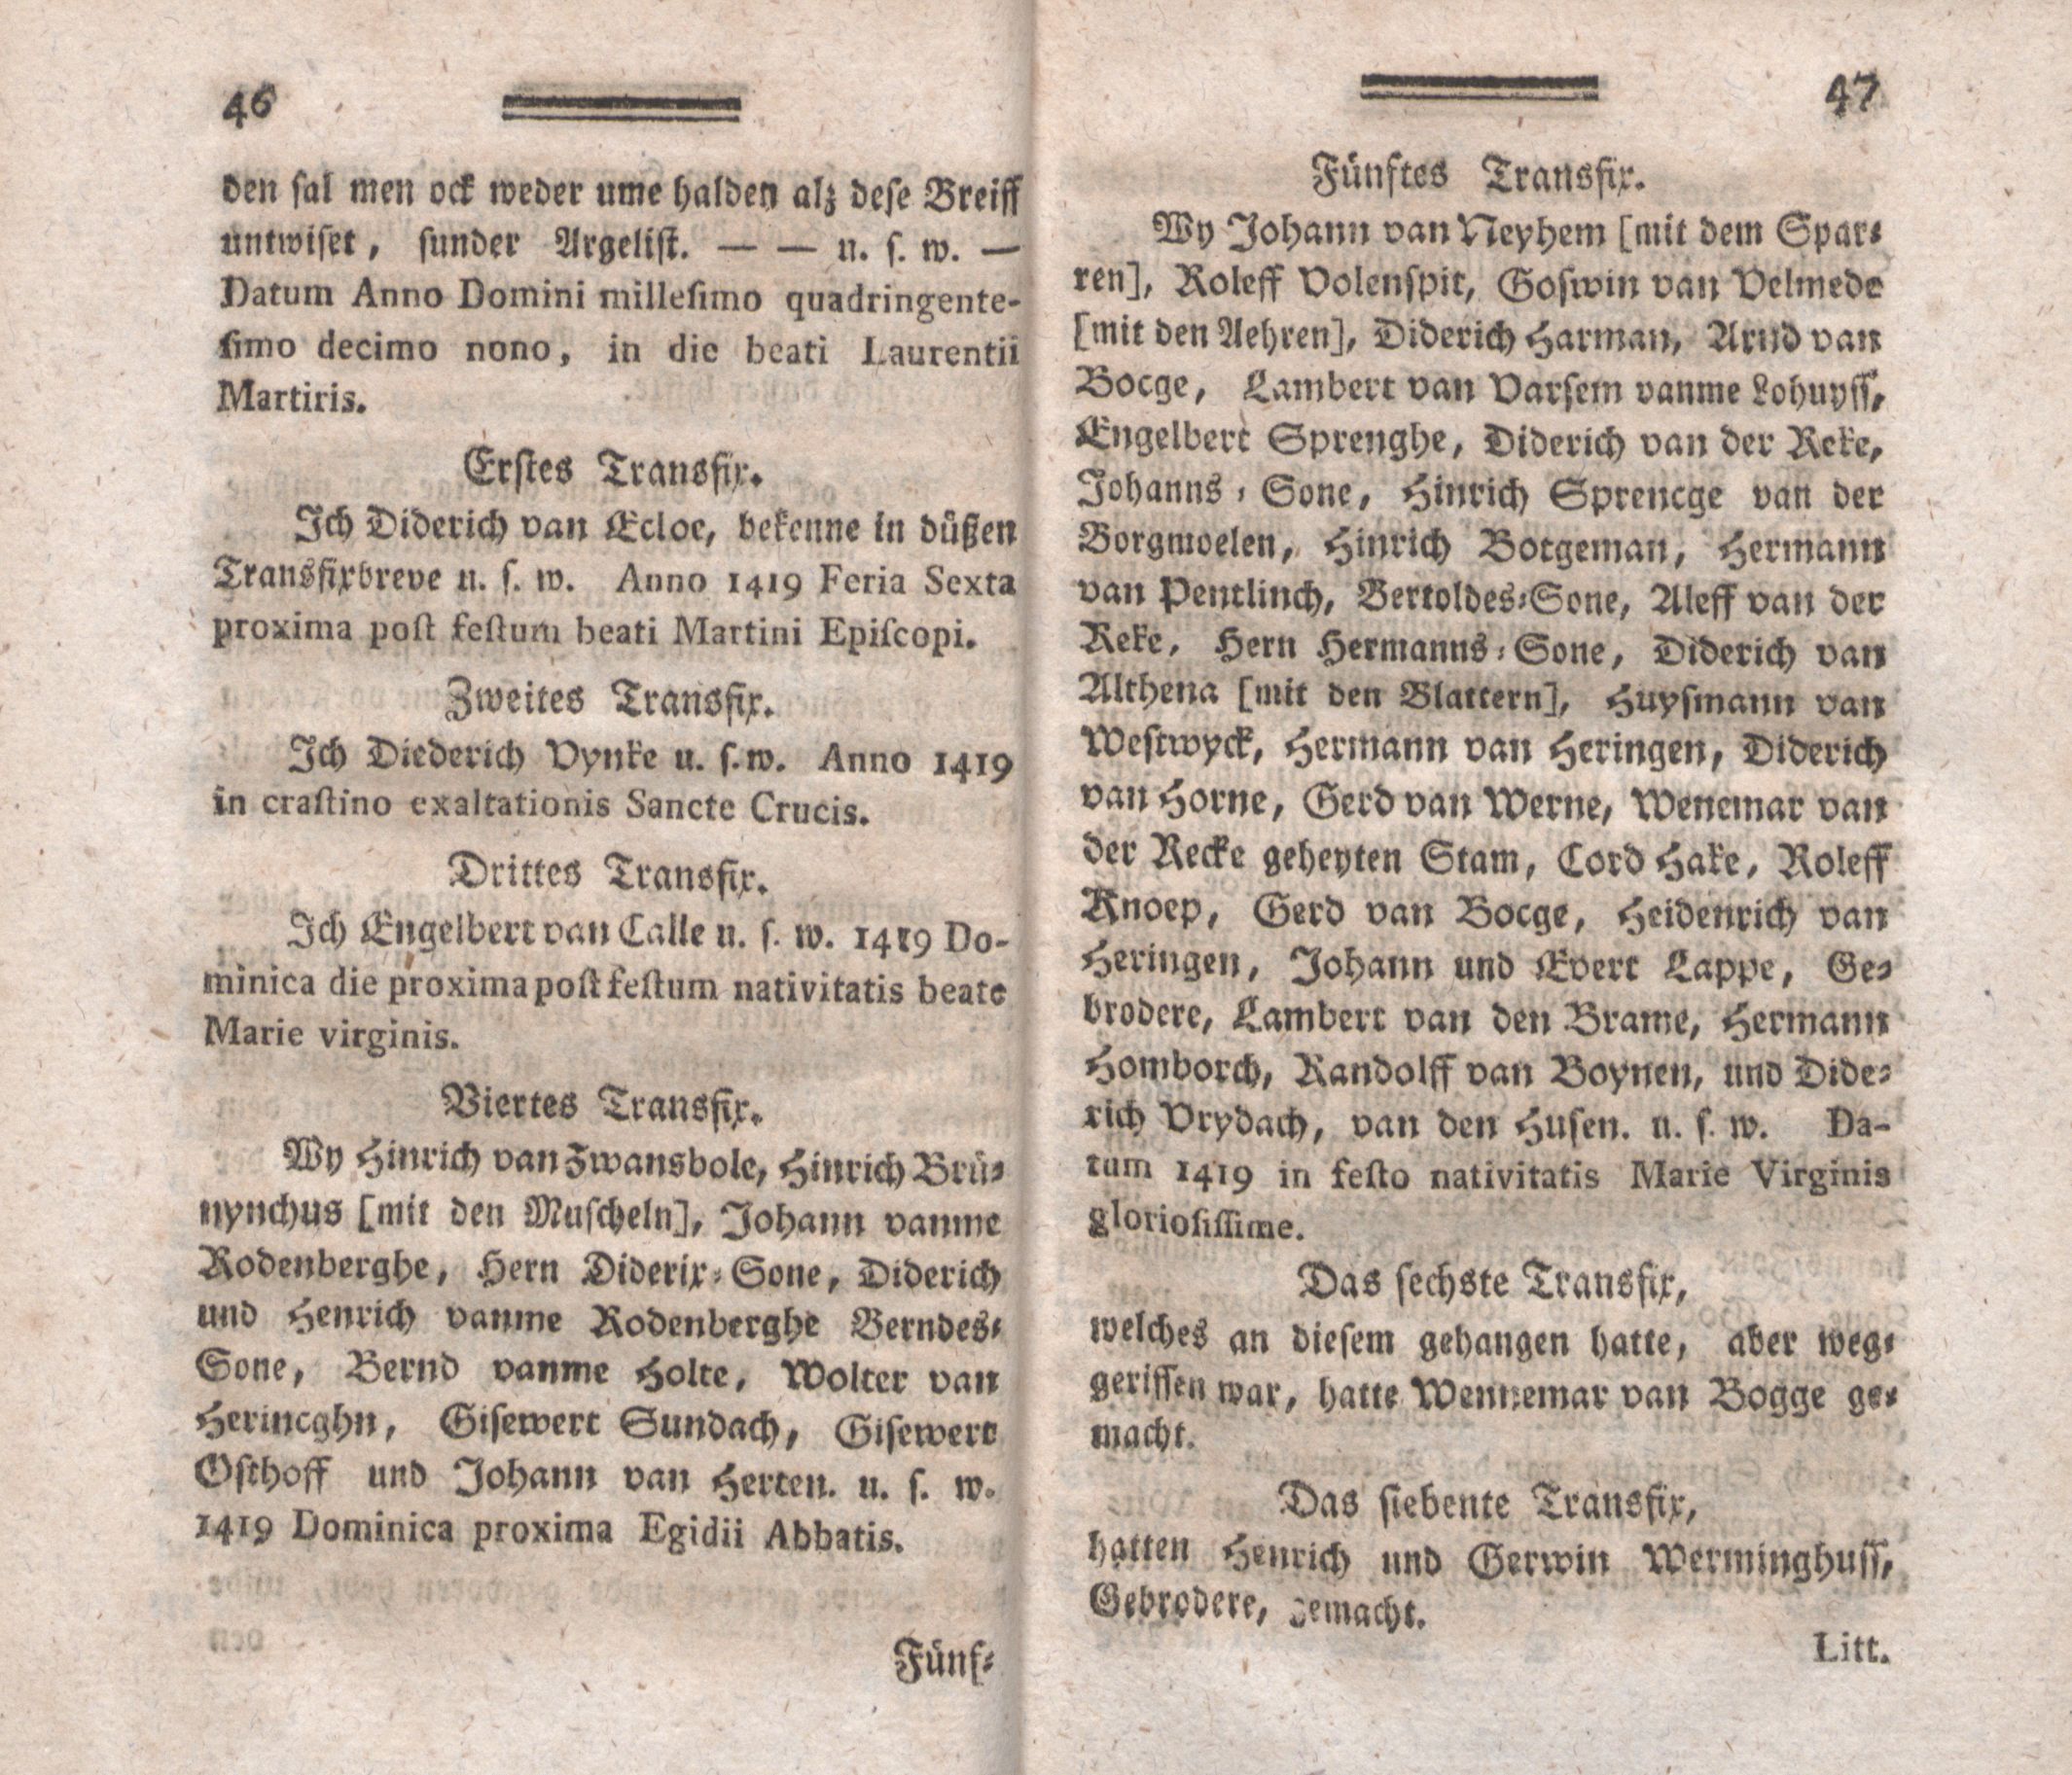 Beyträge zur Geschichte der lief-, ehst- und kurländischen altadelichen Geschlechter (1794) | 19. (46-47) Main body of text